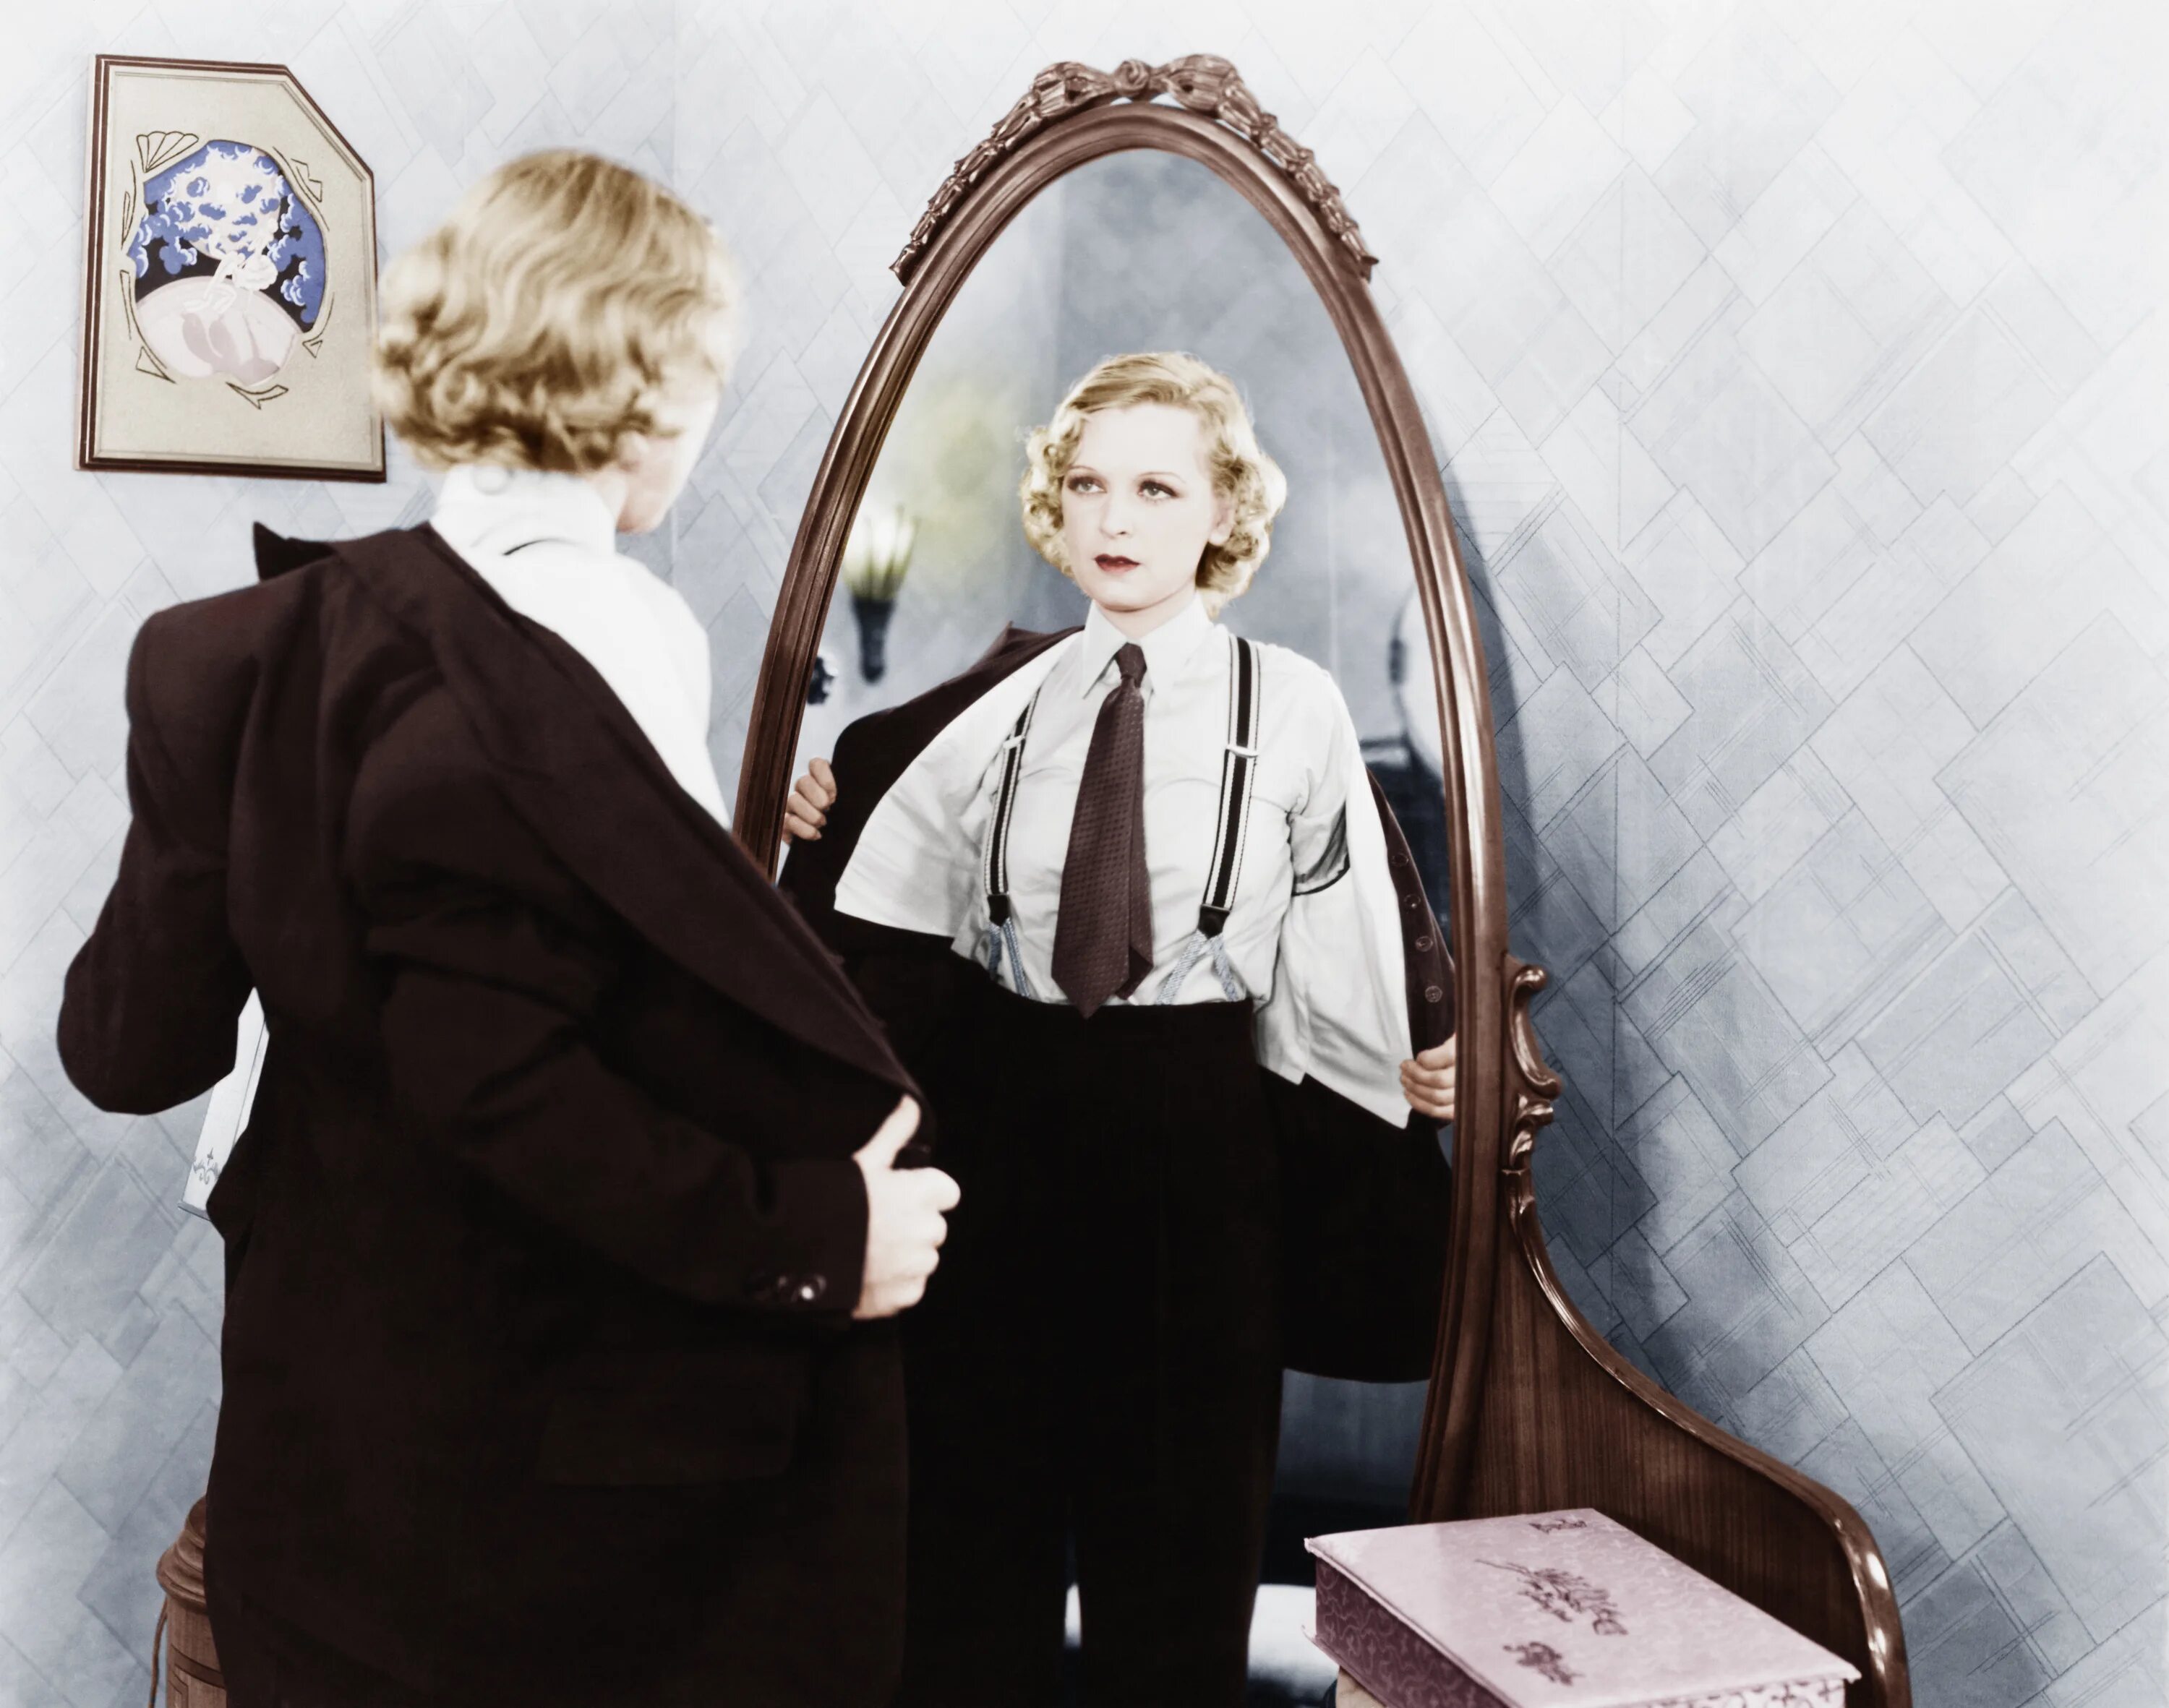 Перед зеркалом. Человек в зеркале. Женщина в зеркале. Отражение в зеркале. Видеть себя в зеркале молодой